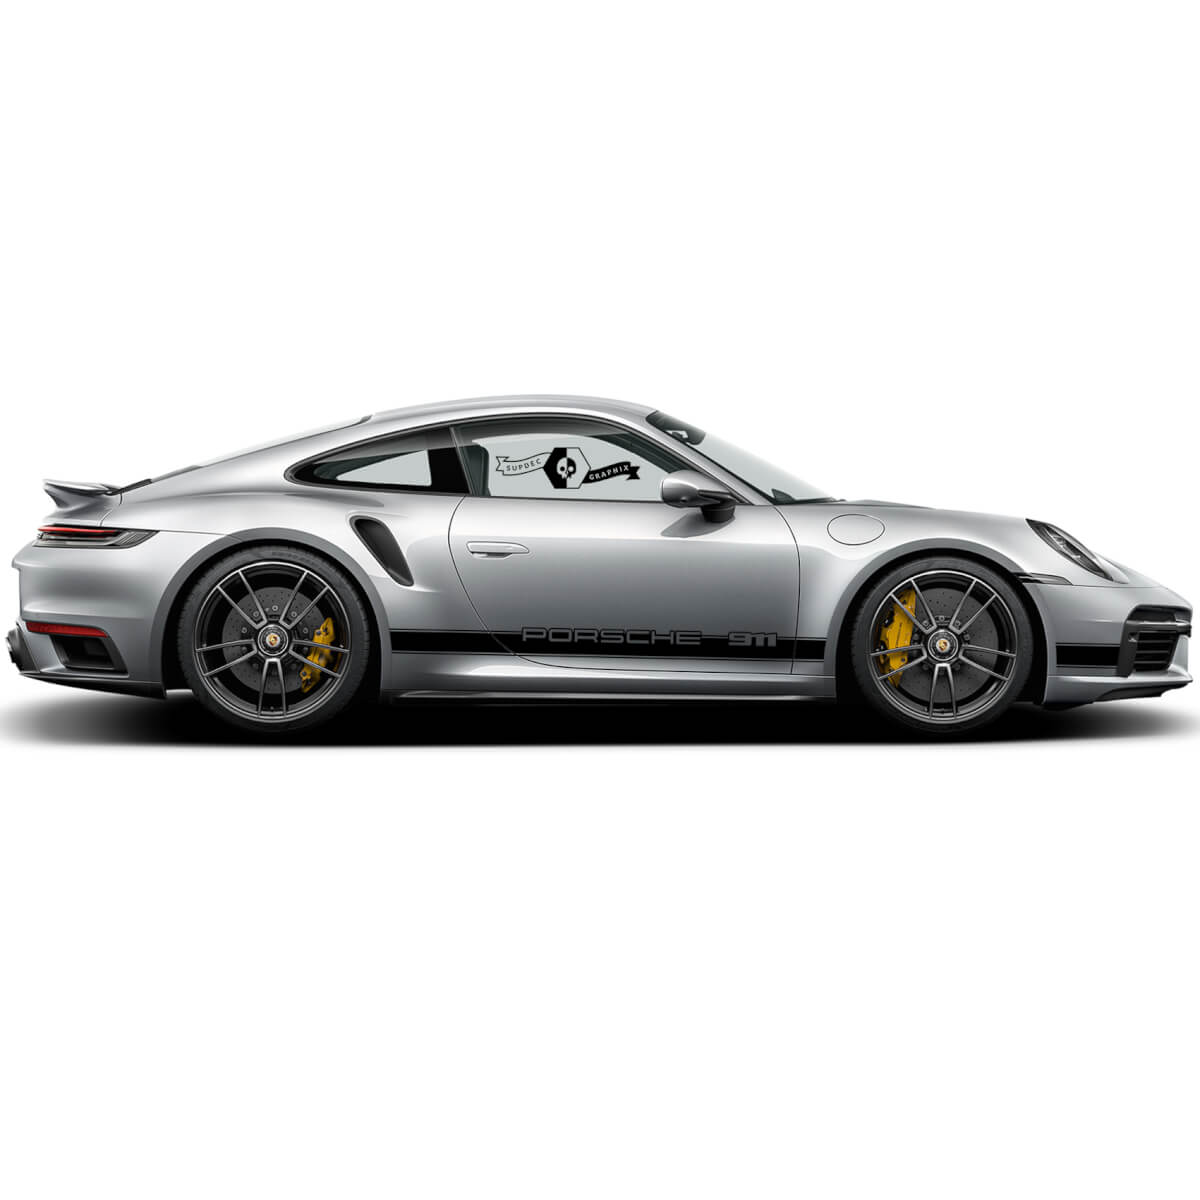 Double Porsche 911 Porsche Carrosserie Autocollants Porte Côté Jupe  Stickers Queue Toit Côté Bandes Portes Kits